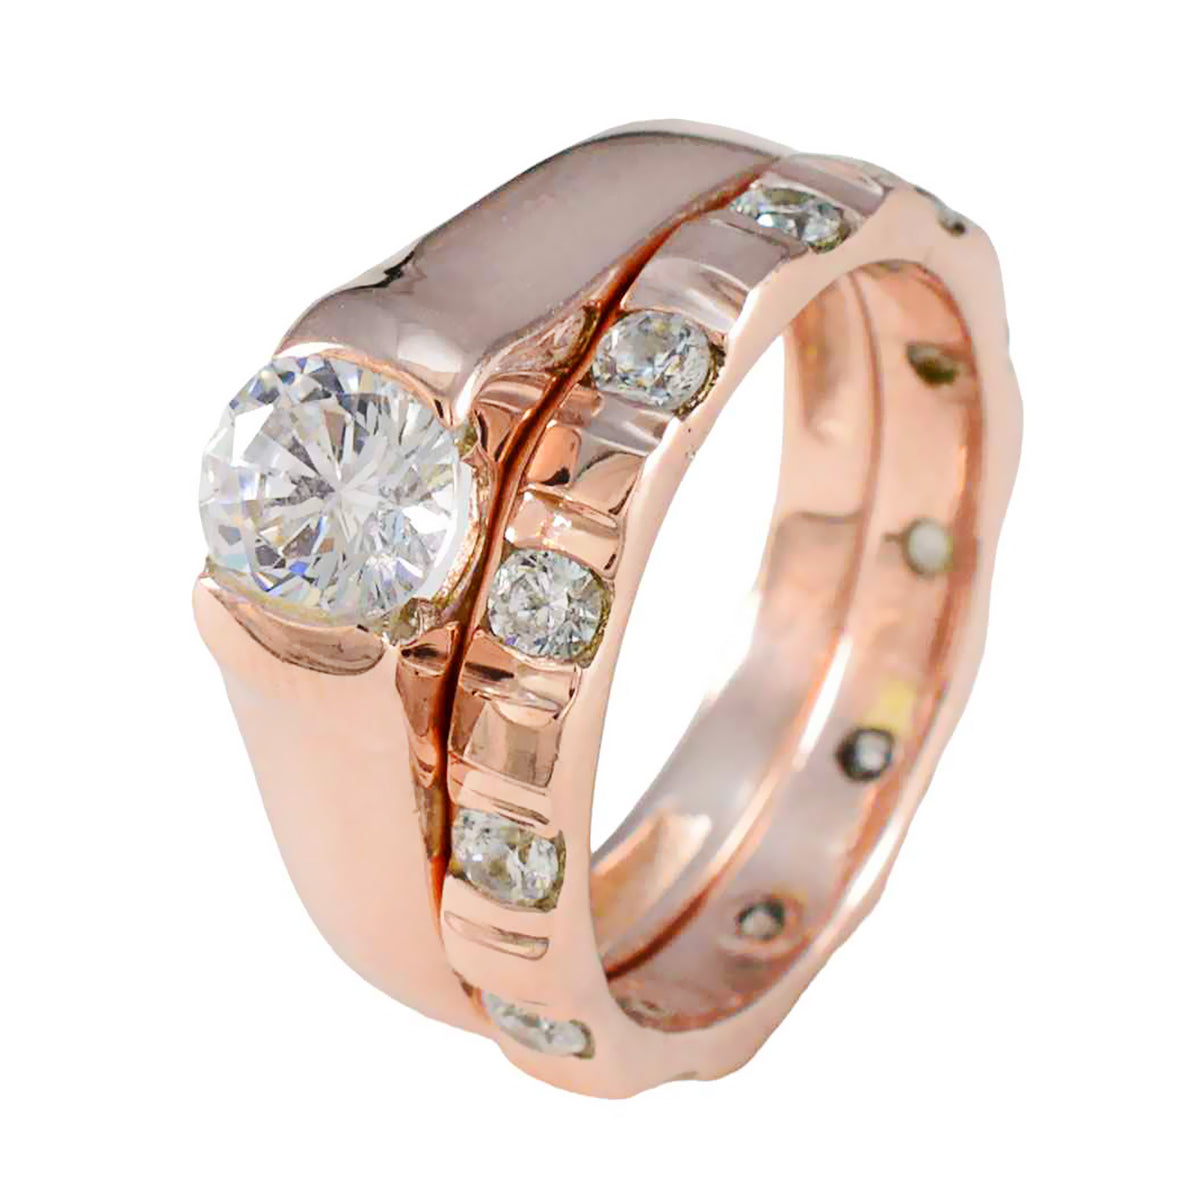 anello riyo perfetto in argento con placcatura in oro rosa anello anniversario gioielli con pietra bianca cz a forma rotonda con montatura a punta